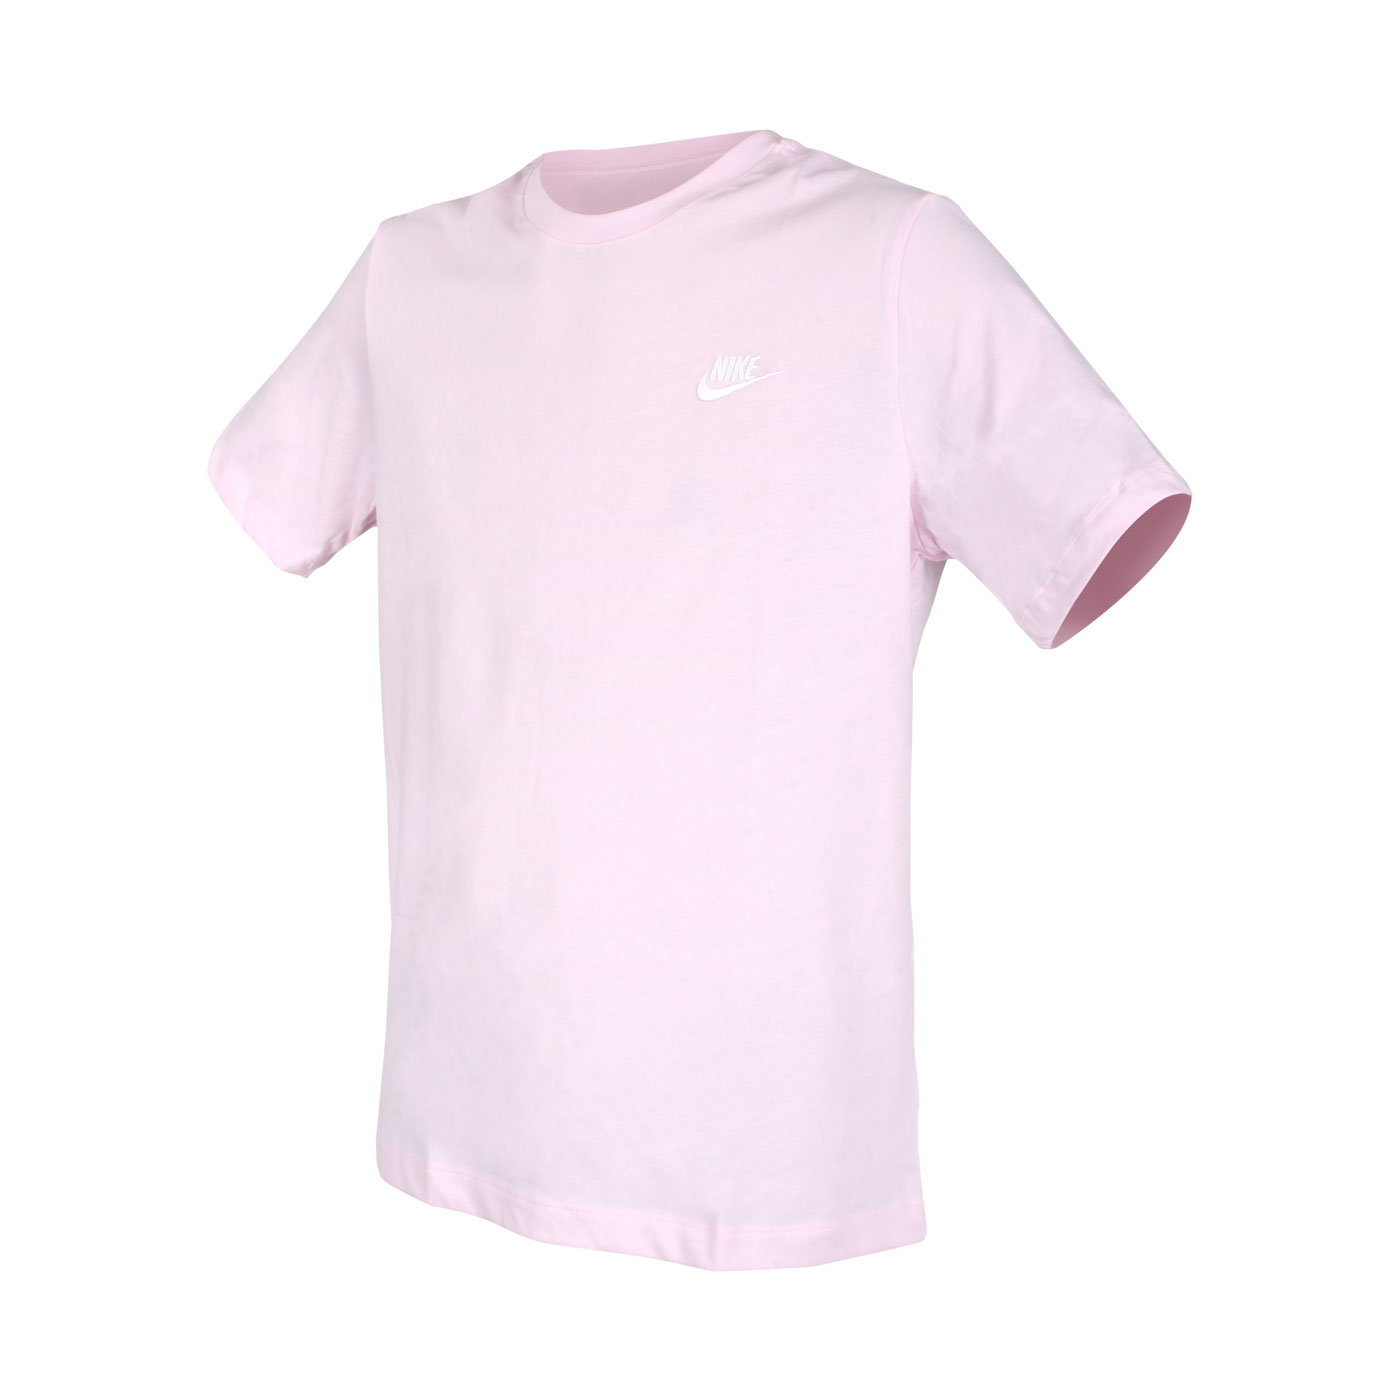 NIKE 男款短袖T恤 AR4999-665 - 粉紅白